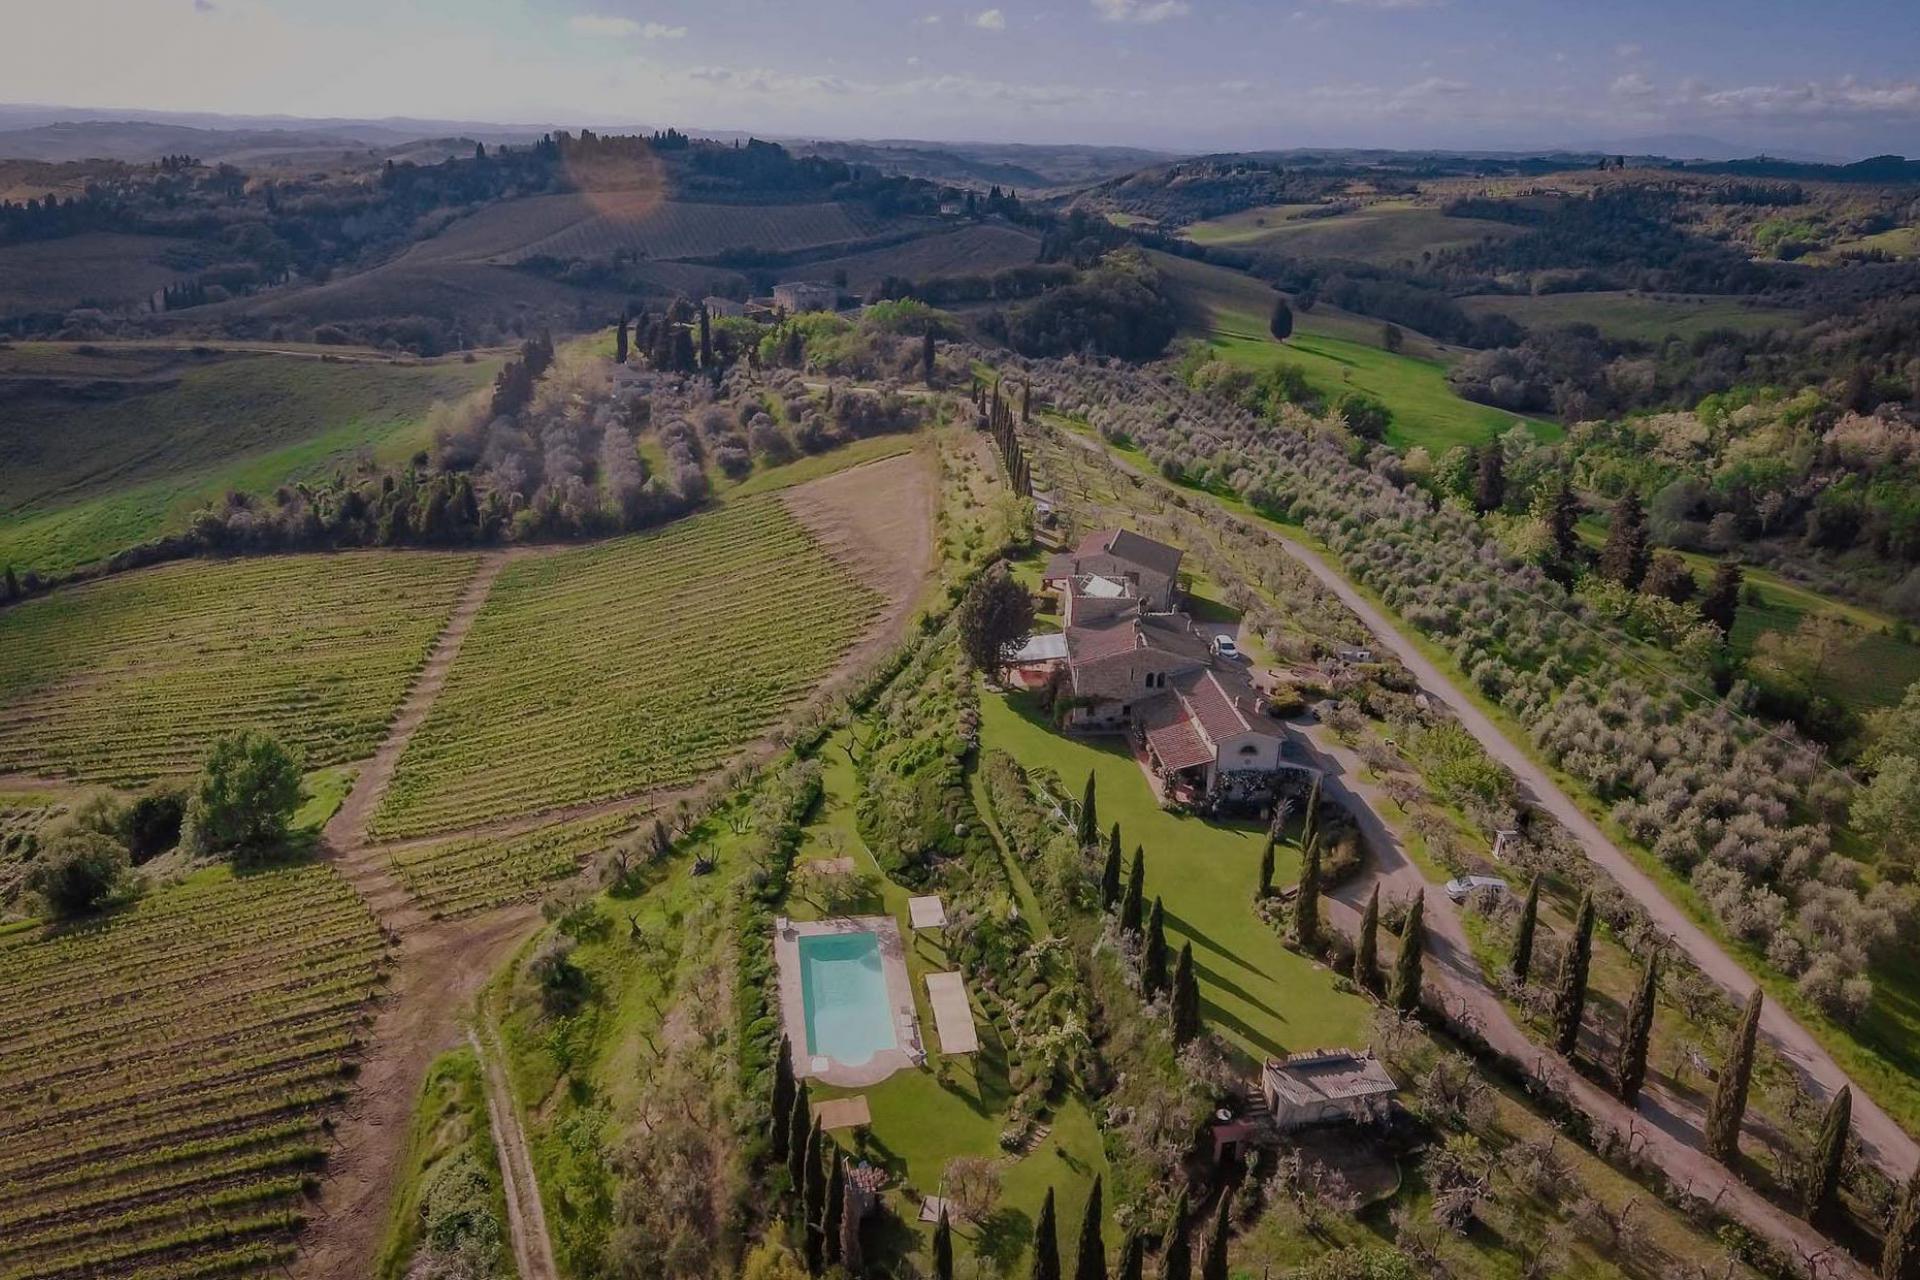 Agriturismo Toscane in olijfgaard met prachtig uitzicht